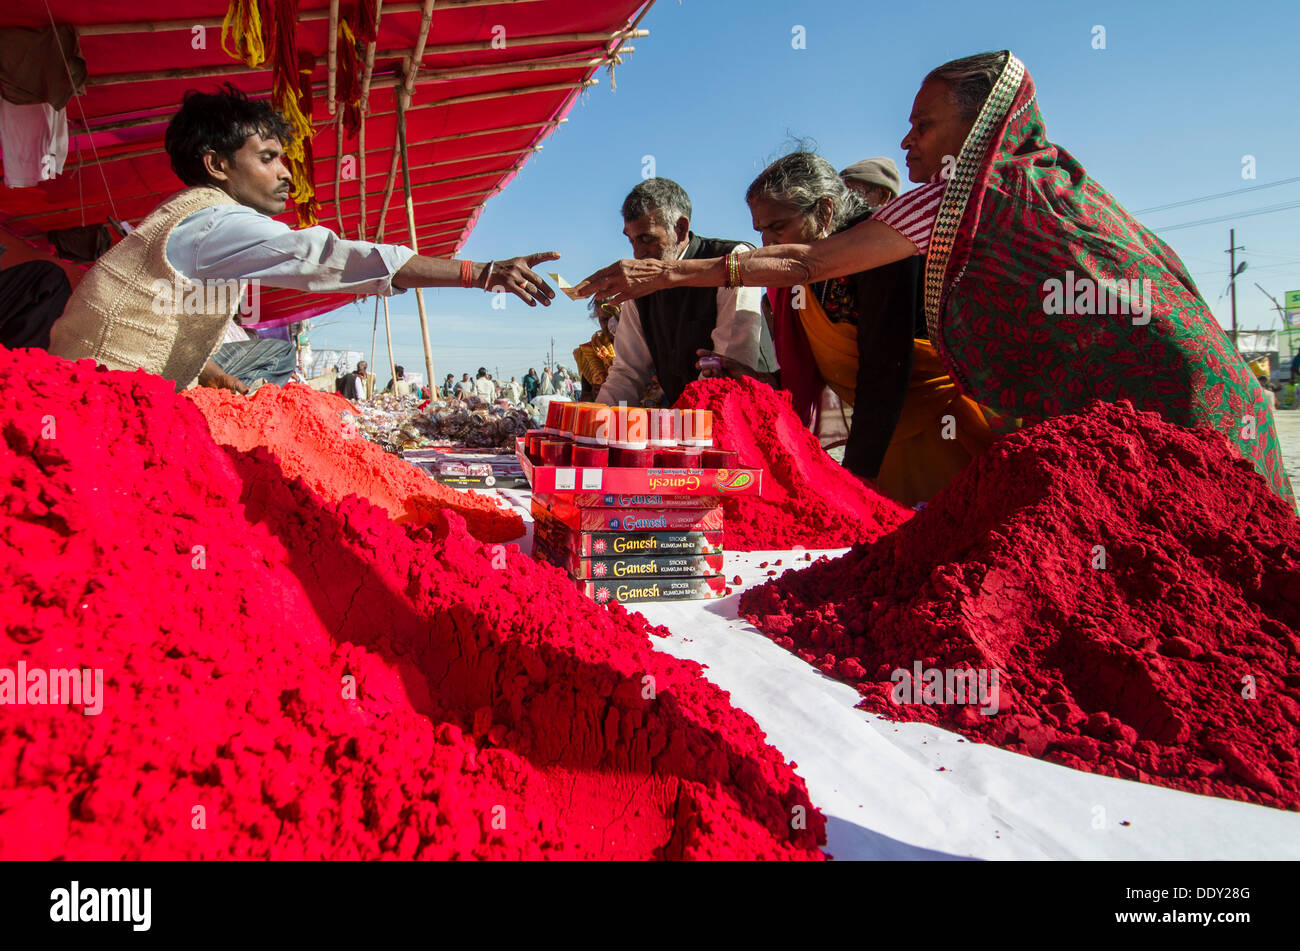 Vendita Streetvendor colorante rosso in polvere per uso religioso durante il Kumbha Mela Foto Stock